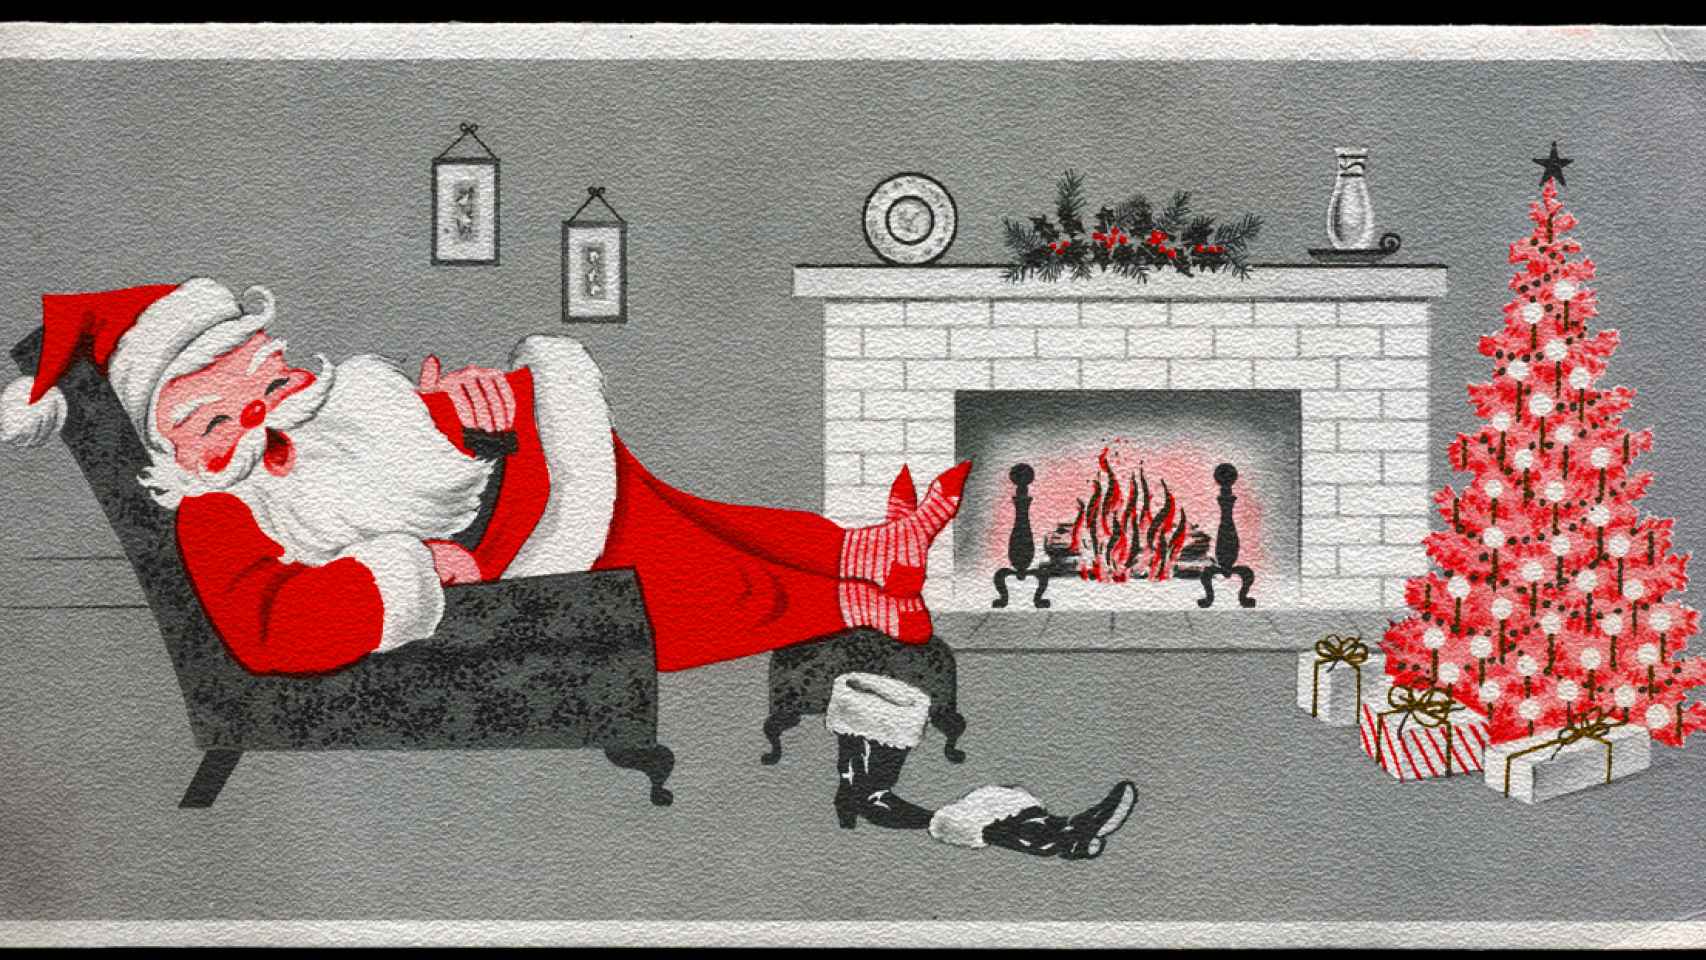 Los médicos recomiendan a Santa Claus que se retire a descansar.